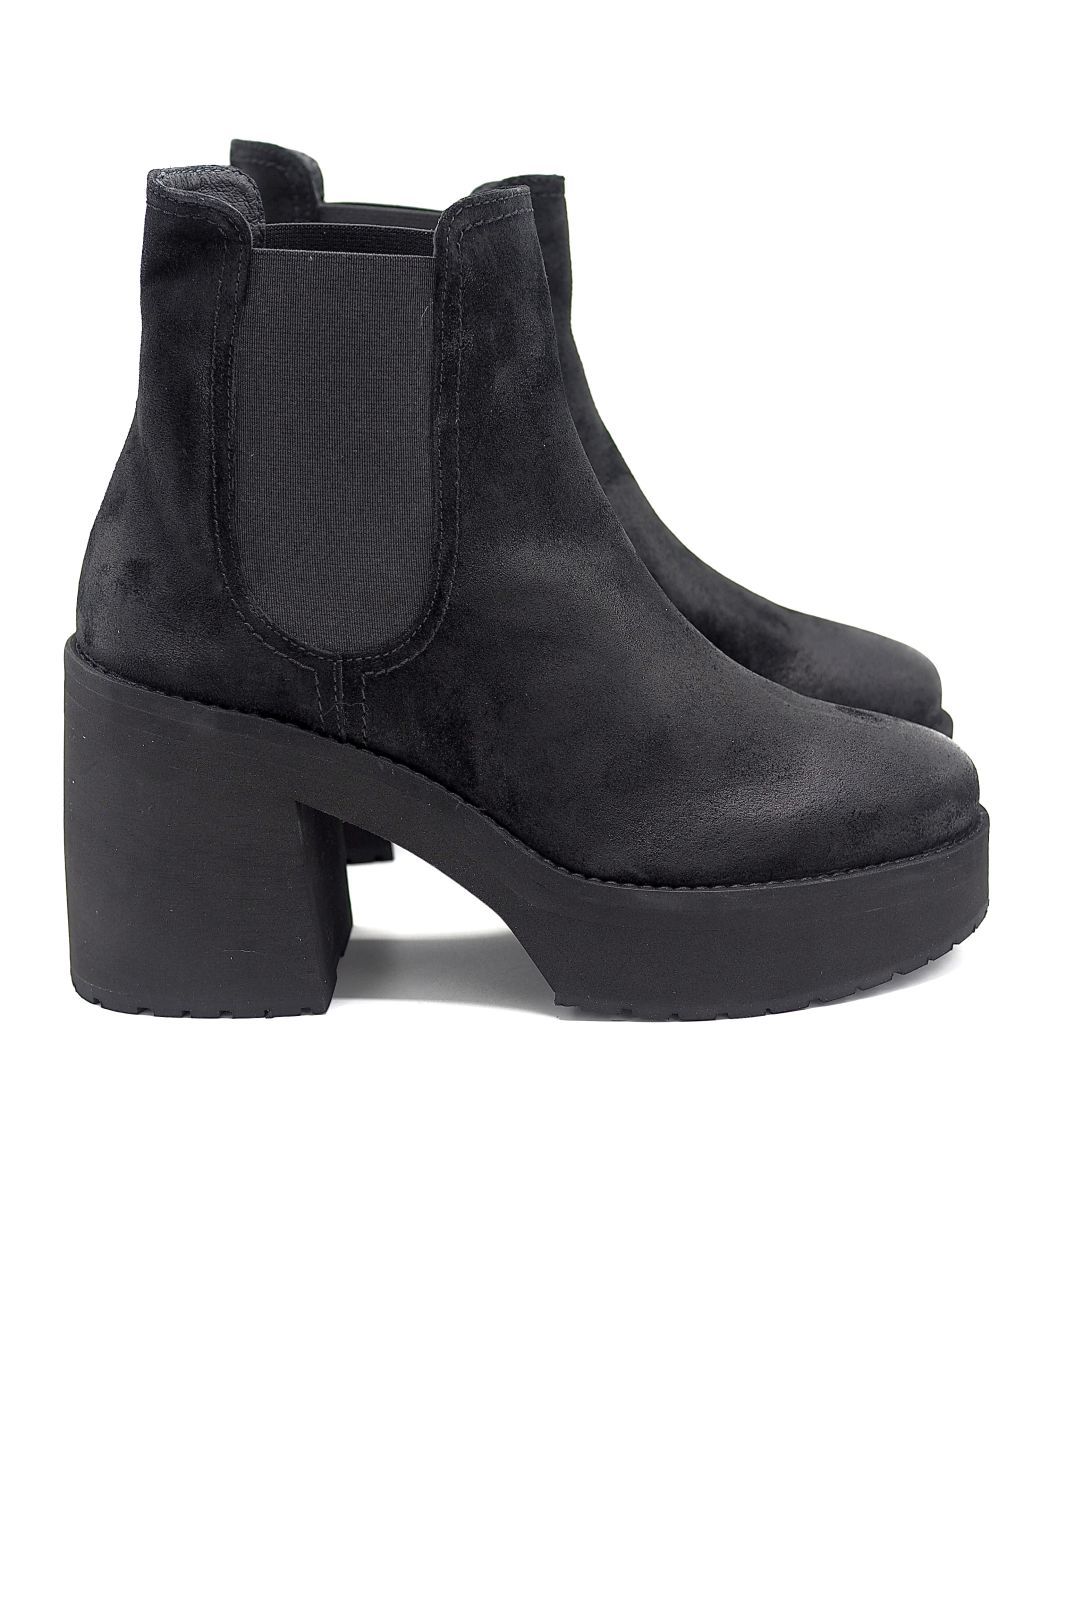 Janet&Janet boots Noir femmes (J&J-Chelsea 2 élastiques - 46900 Boots élastiques ½ talon) - Marine | Much more than shoes